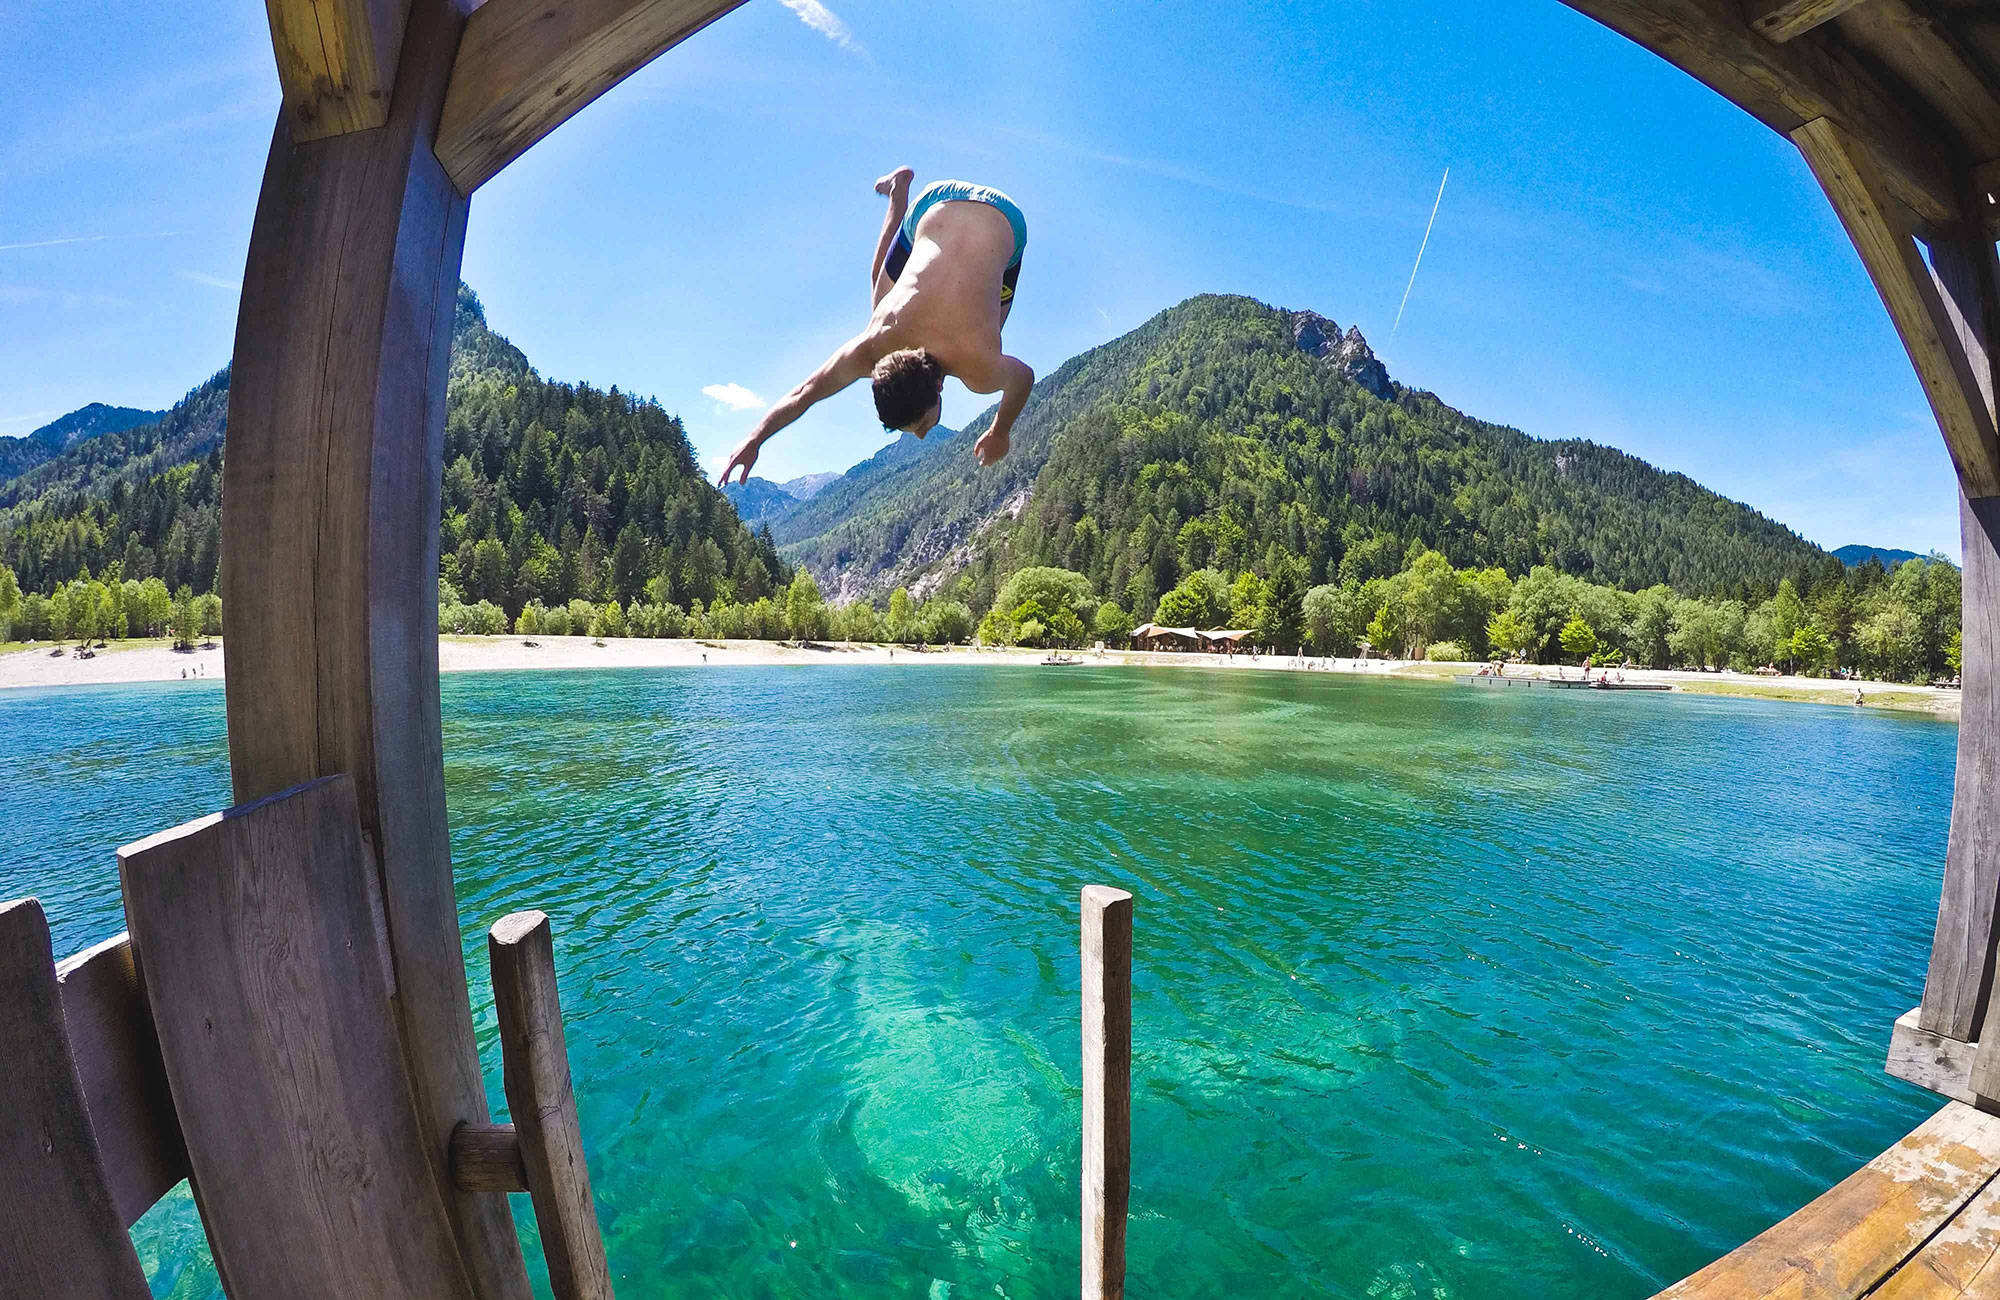 Reiziger springt in meer | Reizen naar Slovenië | KILROY